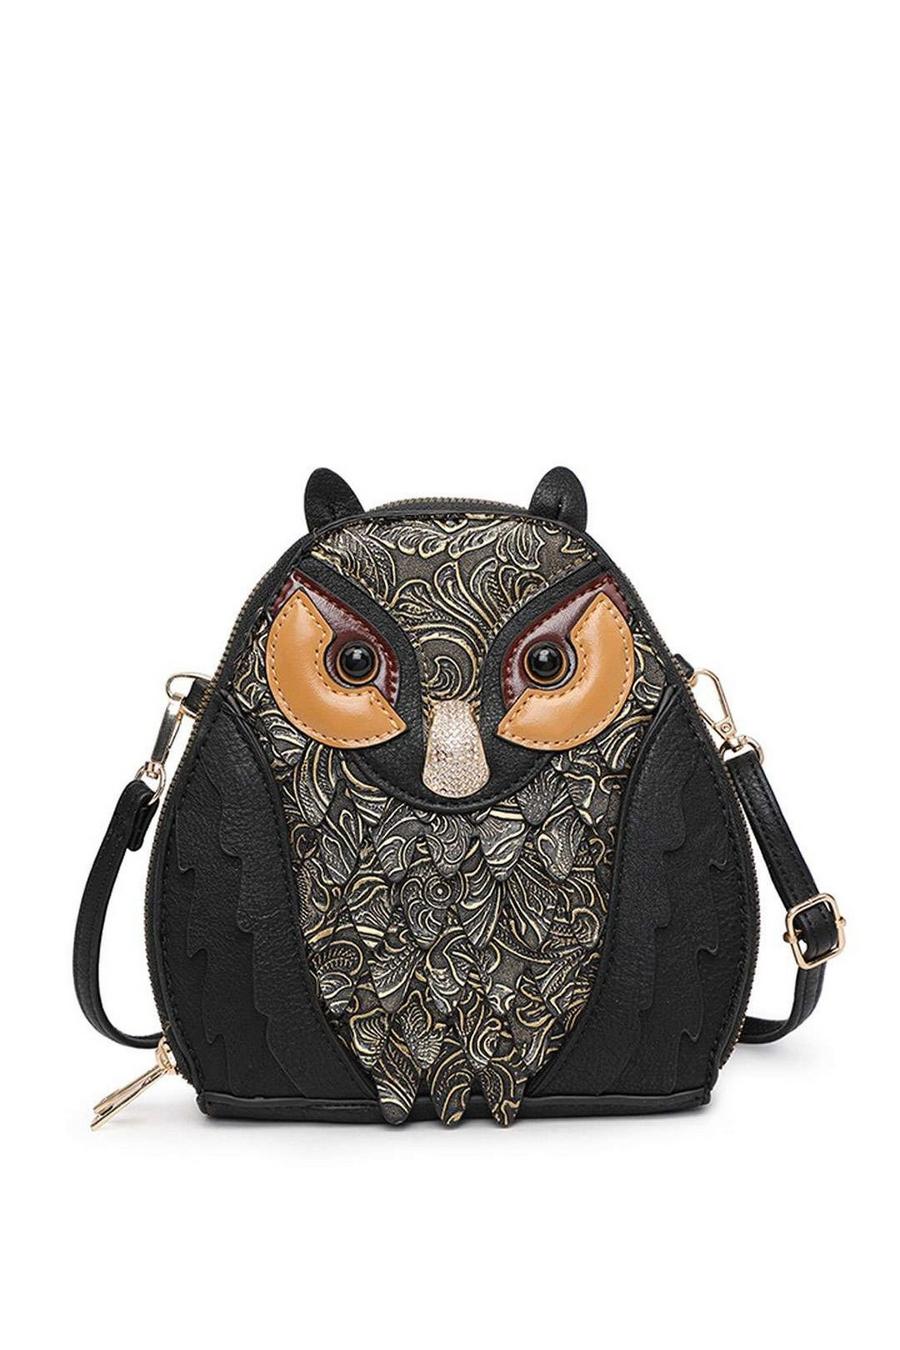 Black Owl Shape Dual Compartments Small Shoulder Crossbody Bag